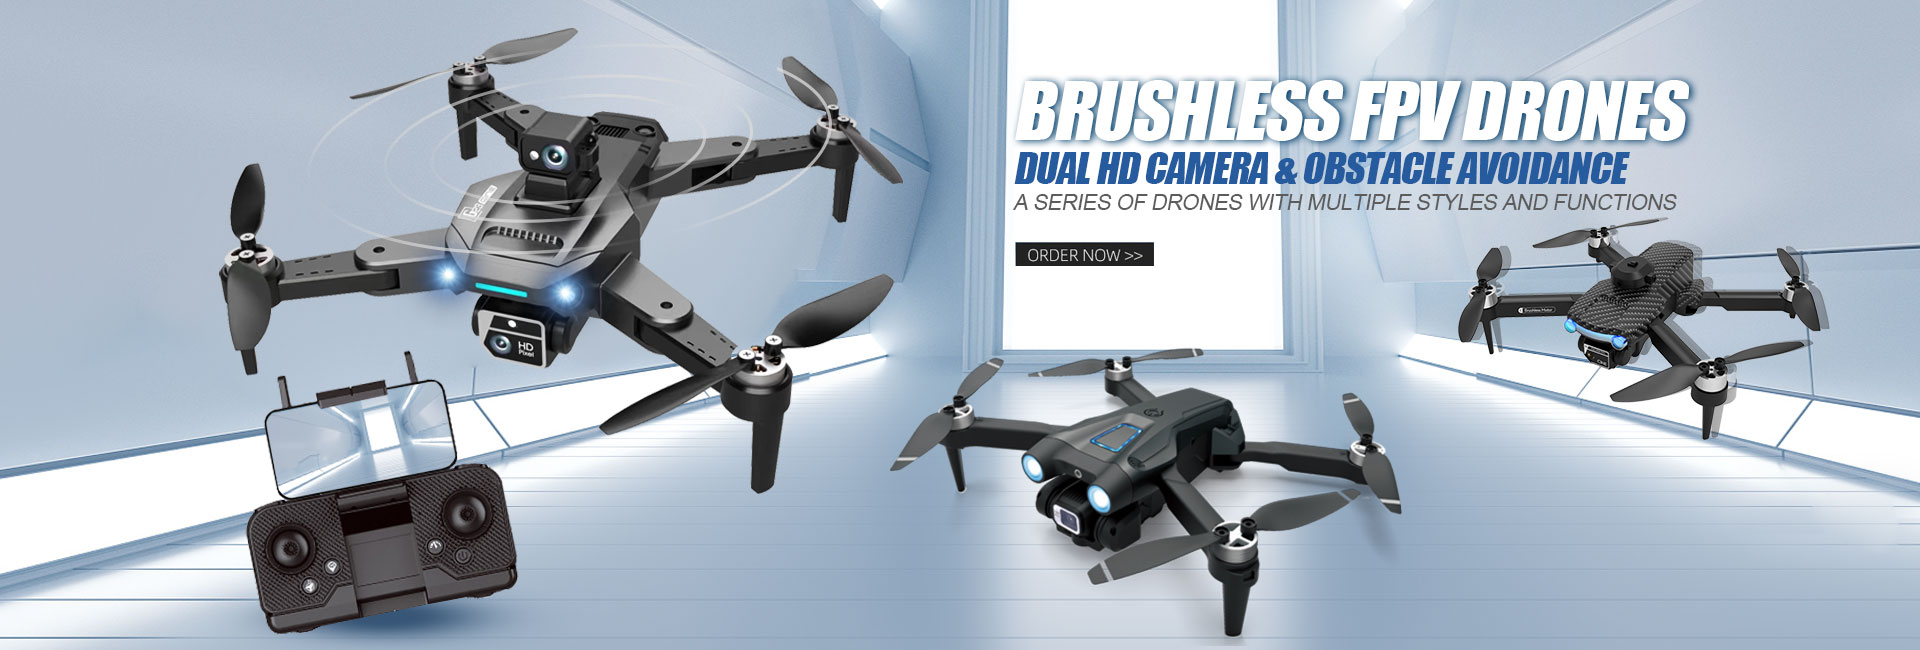 brushless motor fpv drone series banner